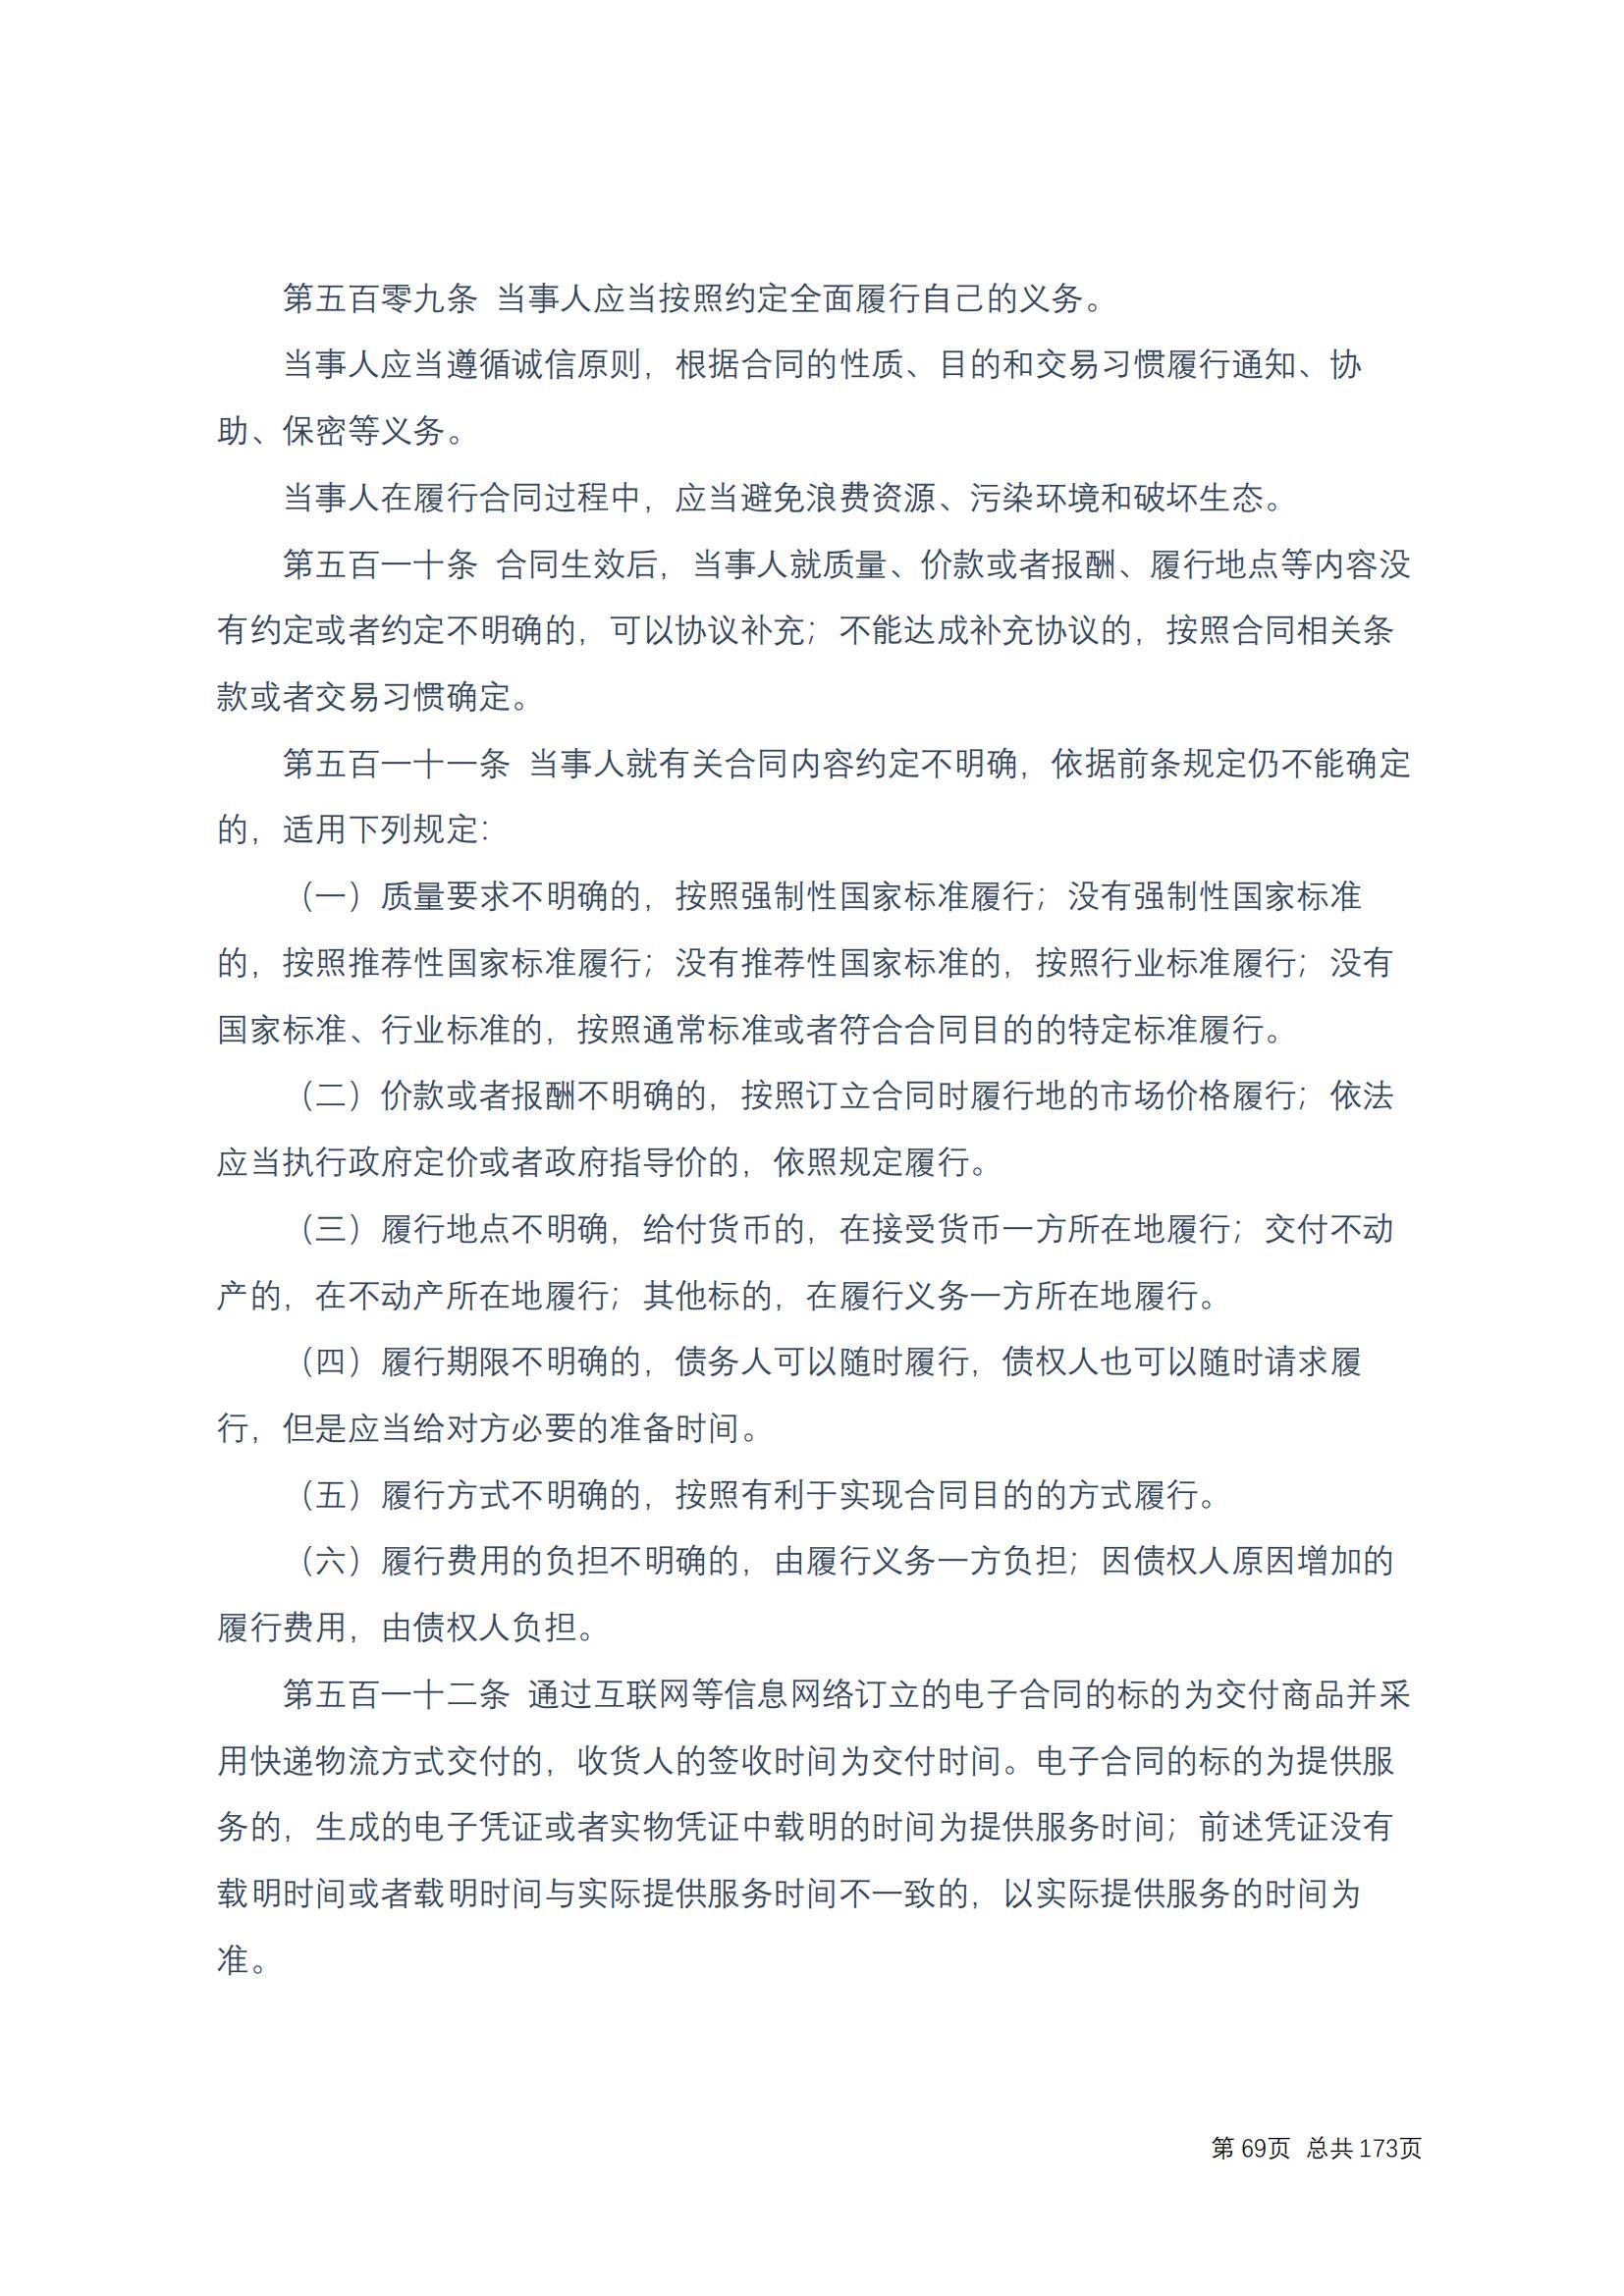 中华人民共和国民法典 修改过_68